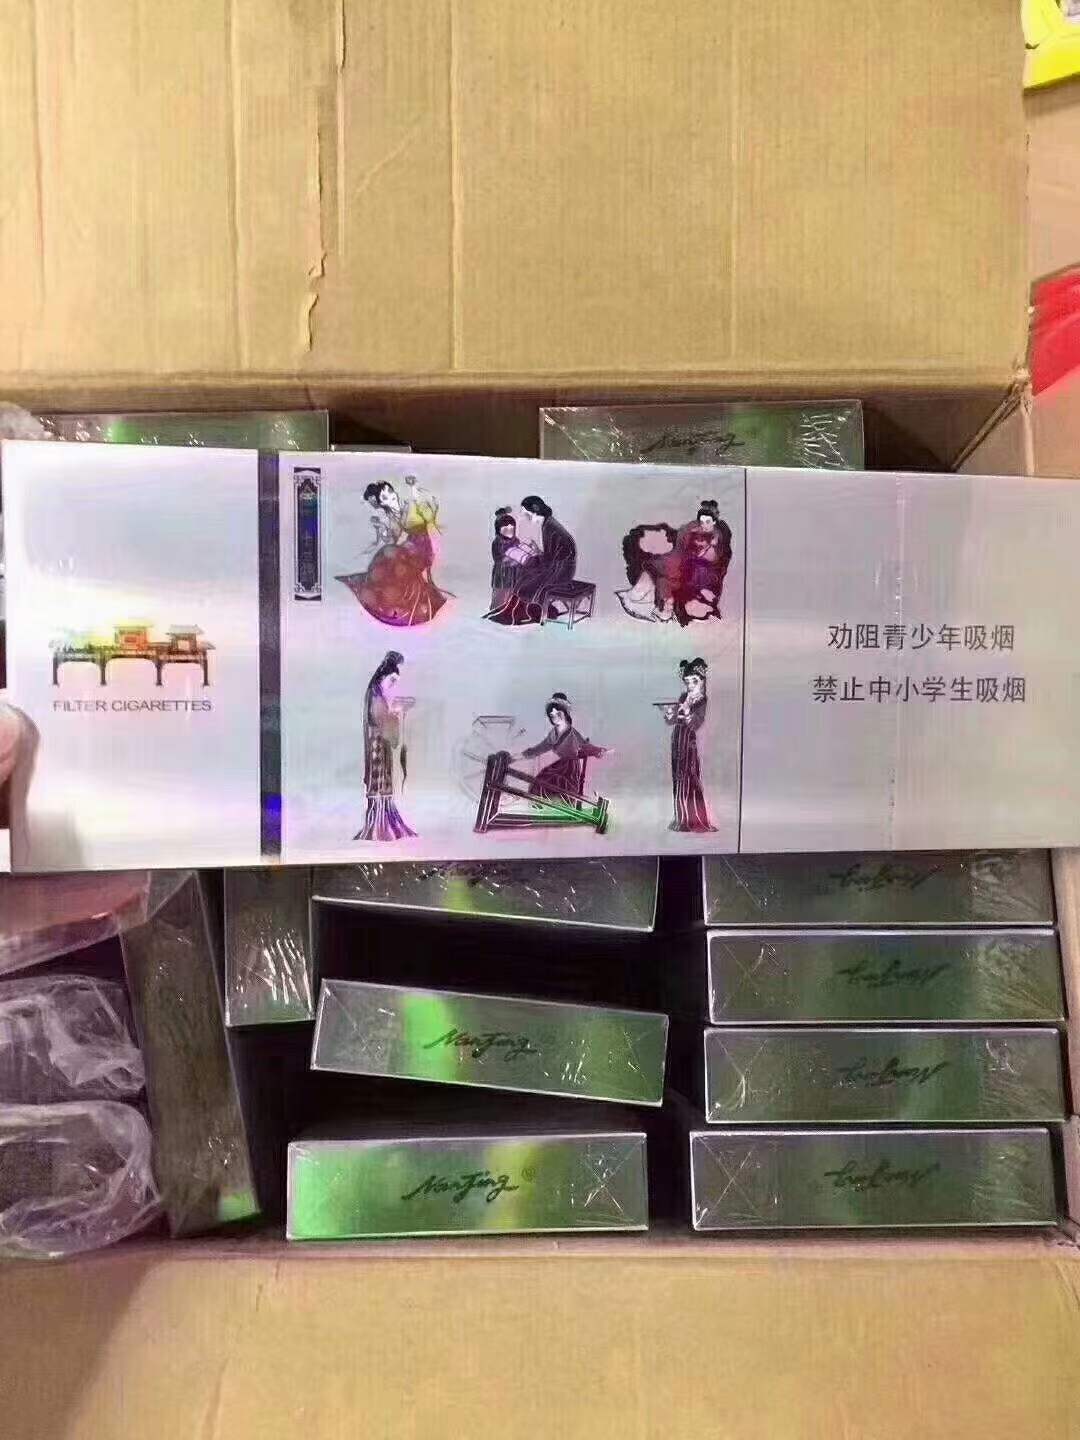 安徽烟草网上订货——中国烟草网上订货